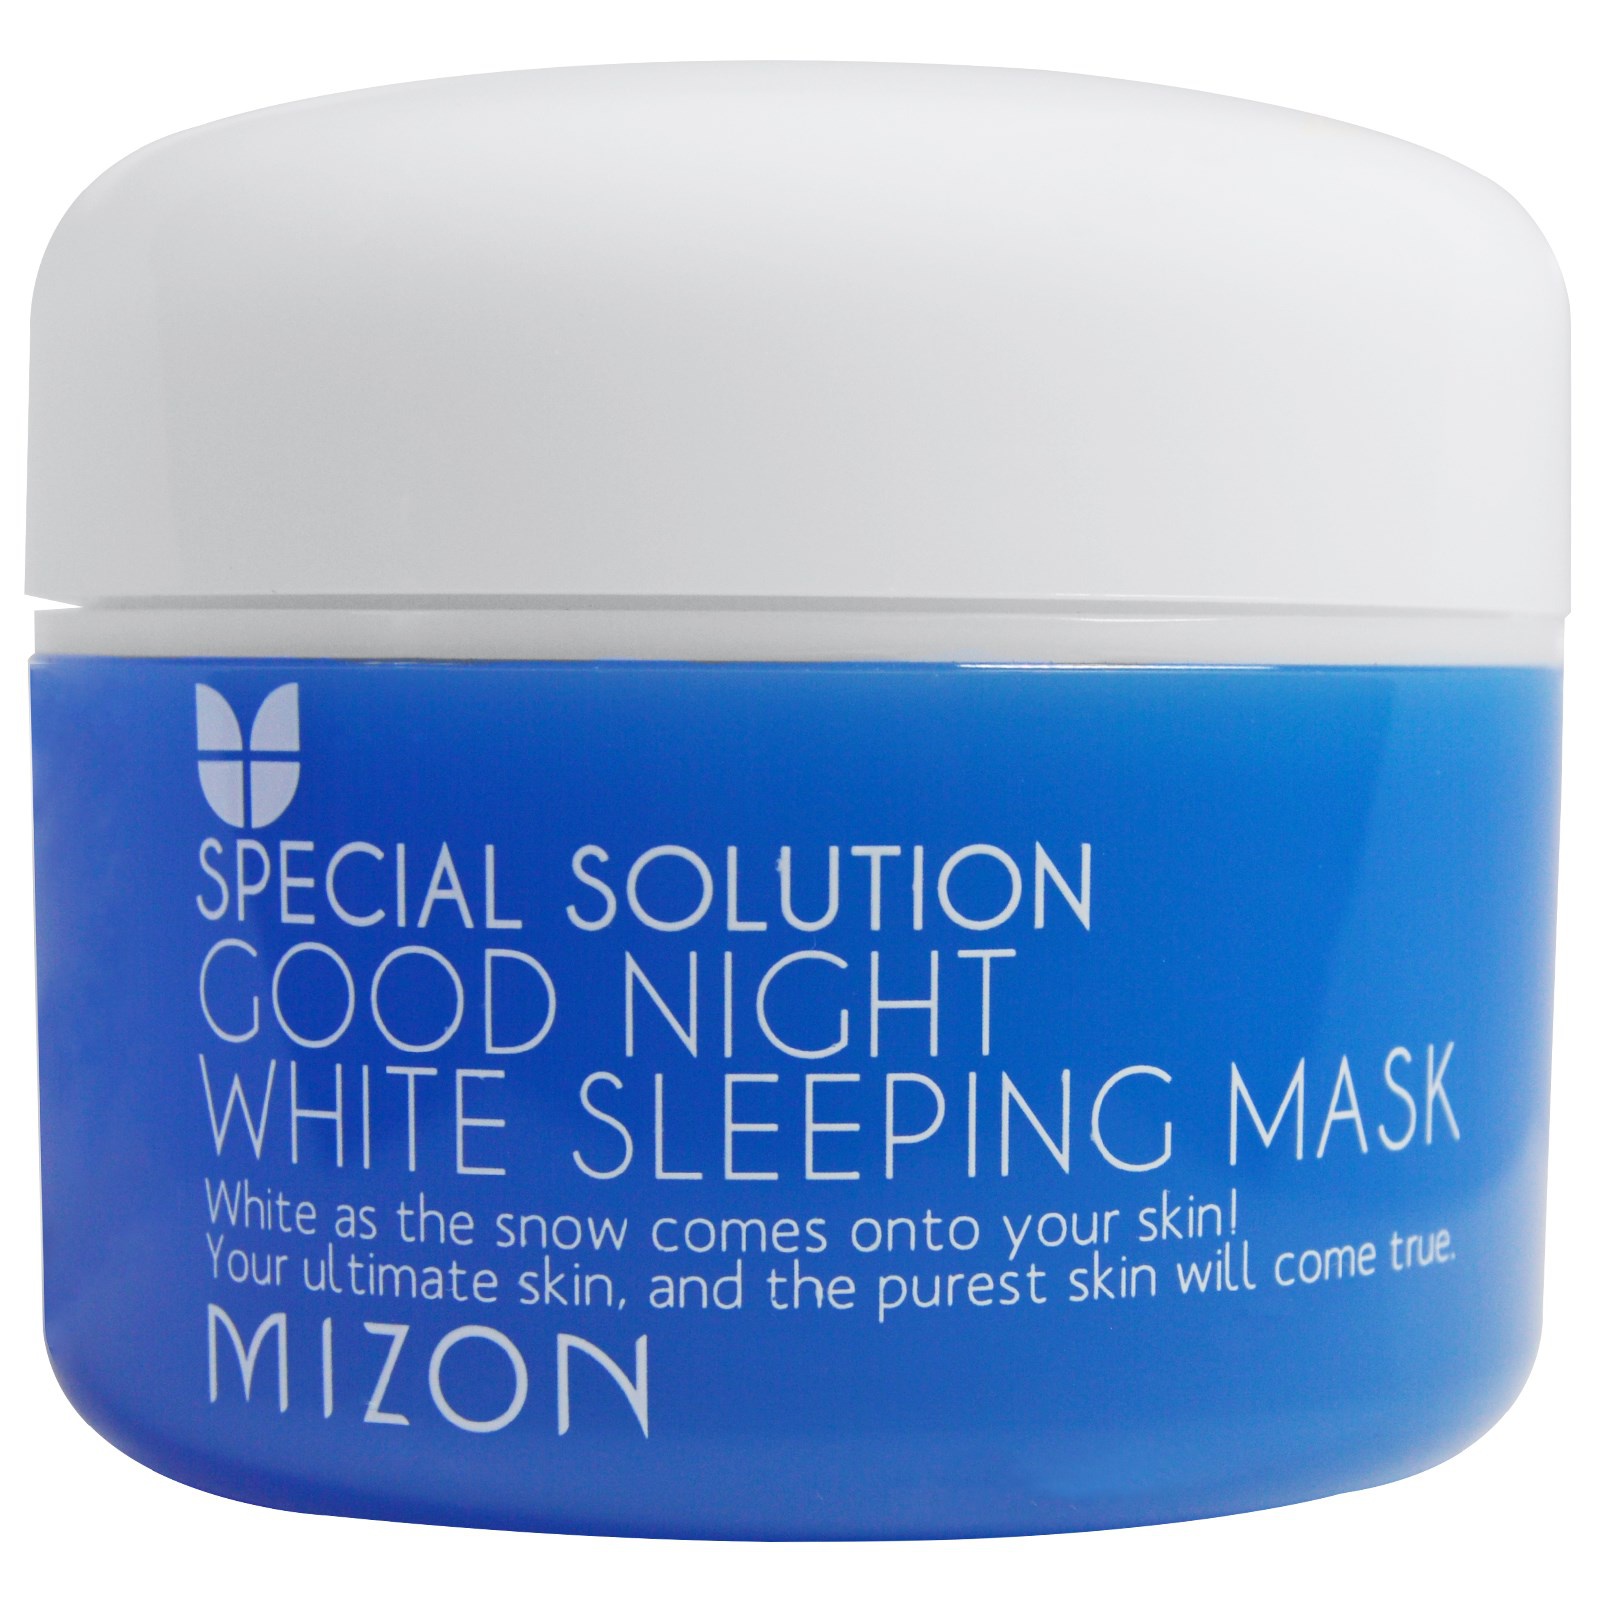 Mizon Special Solution Good Night White Sleeping Mask